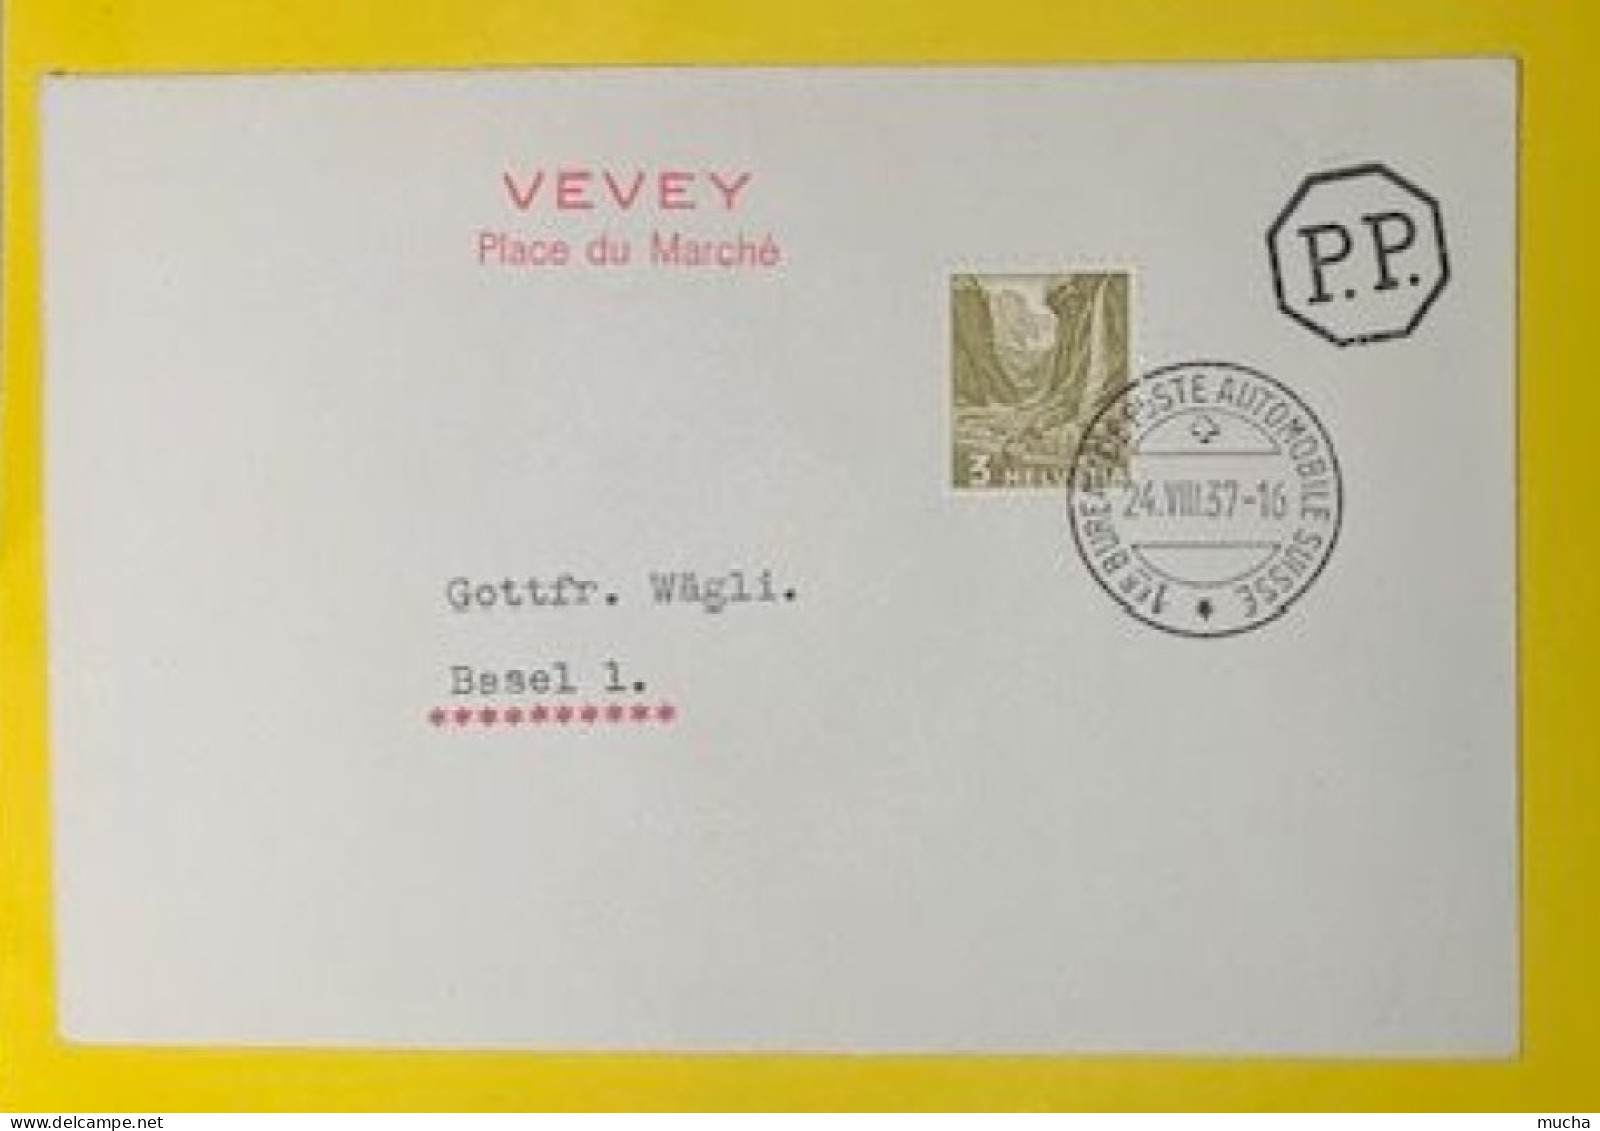 20407 - 1er Bureau De Poste Automobile 24.08.1937 Cachet Rouge Vevey Place Du Marché - Briefe U. Dokumente